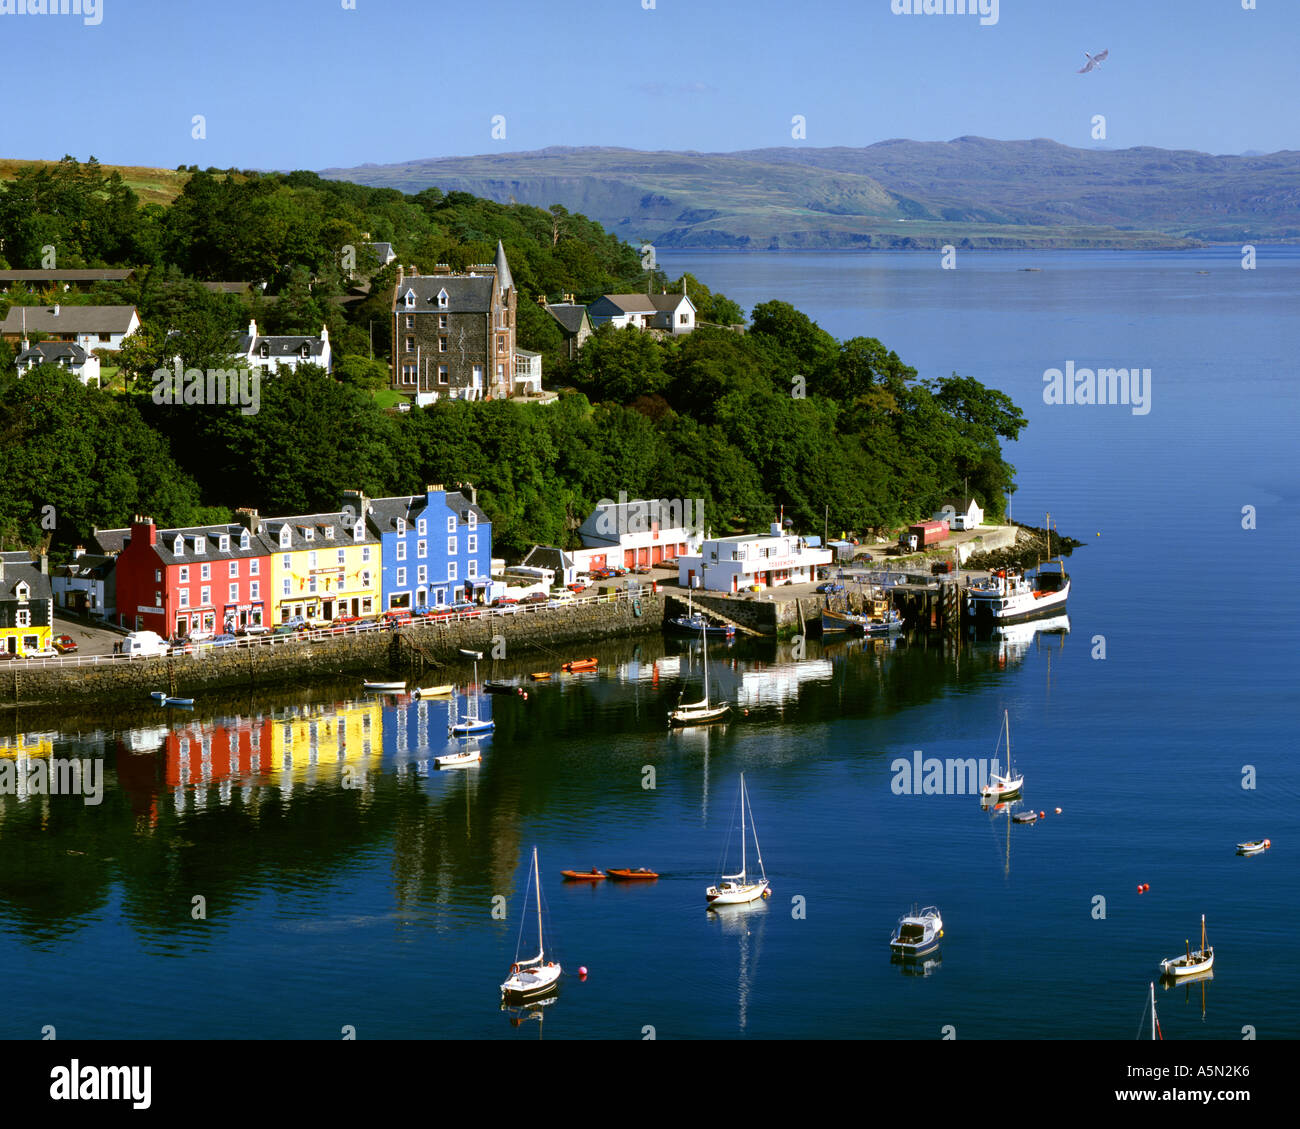 GB - Escocia: Tobermory puerto y ciudad en la isla de Mull Foto de stock